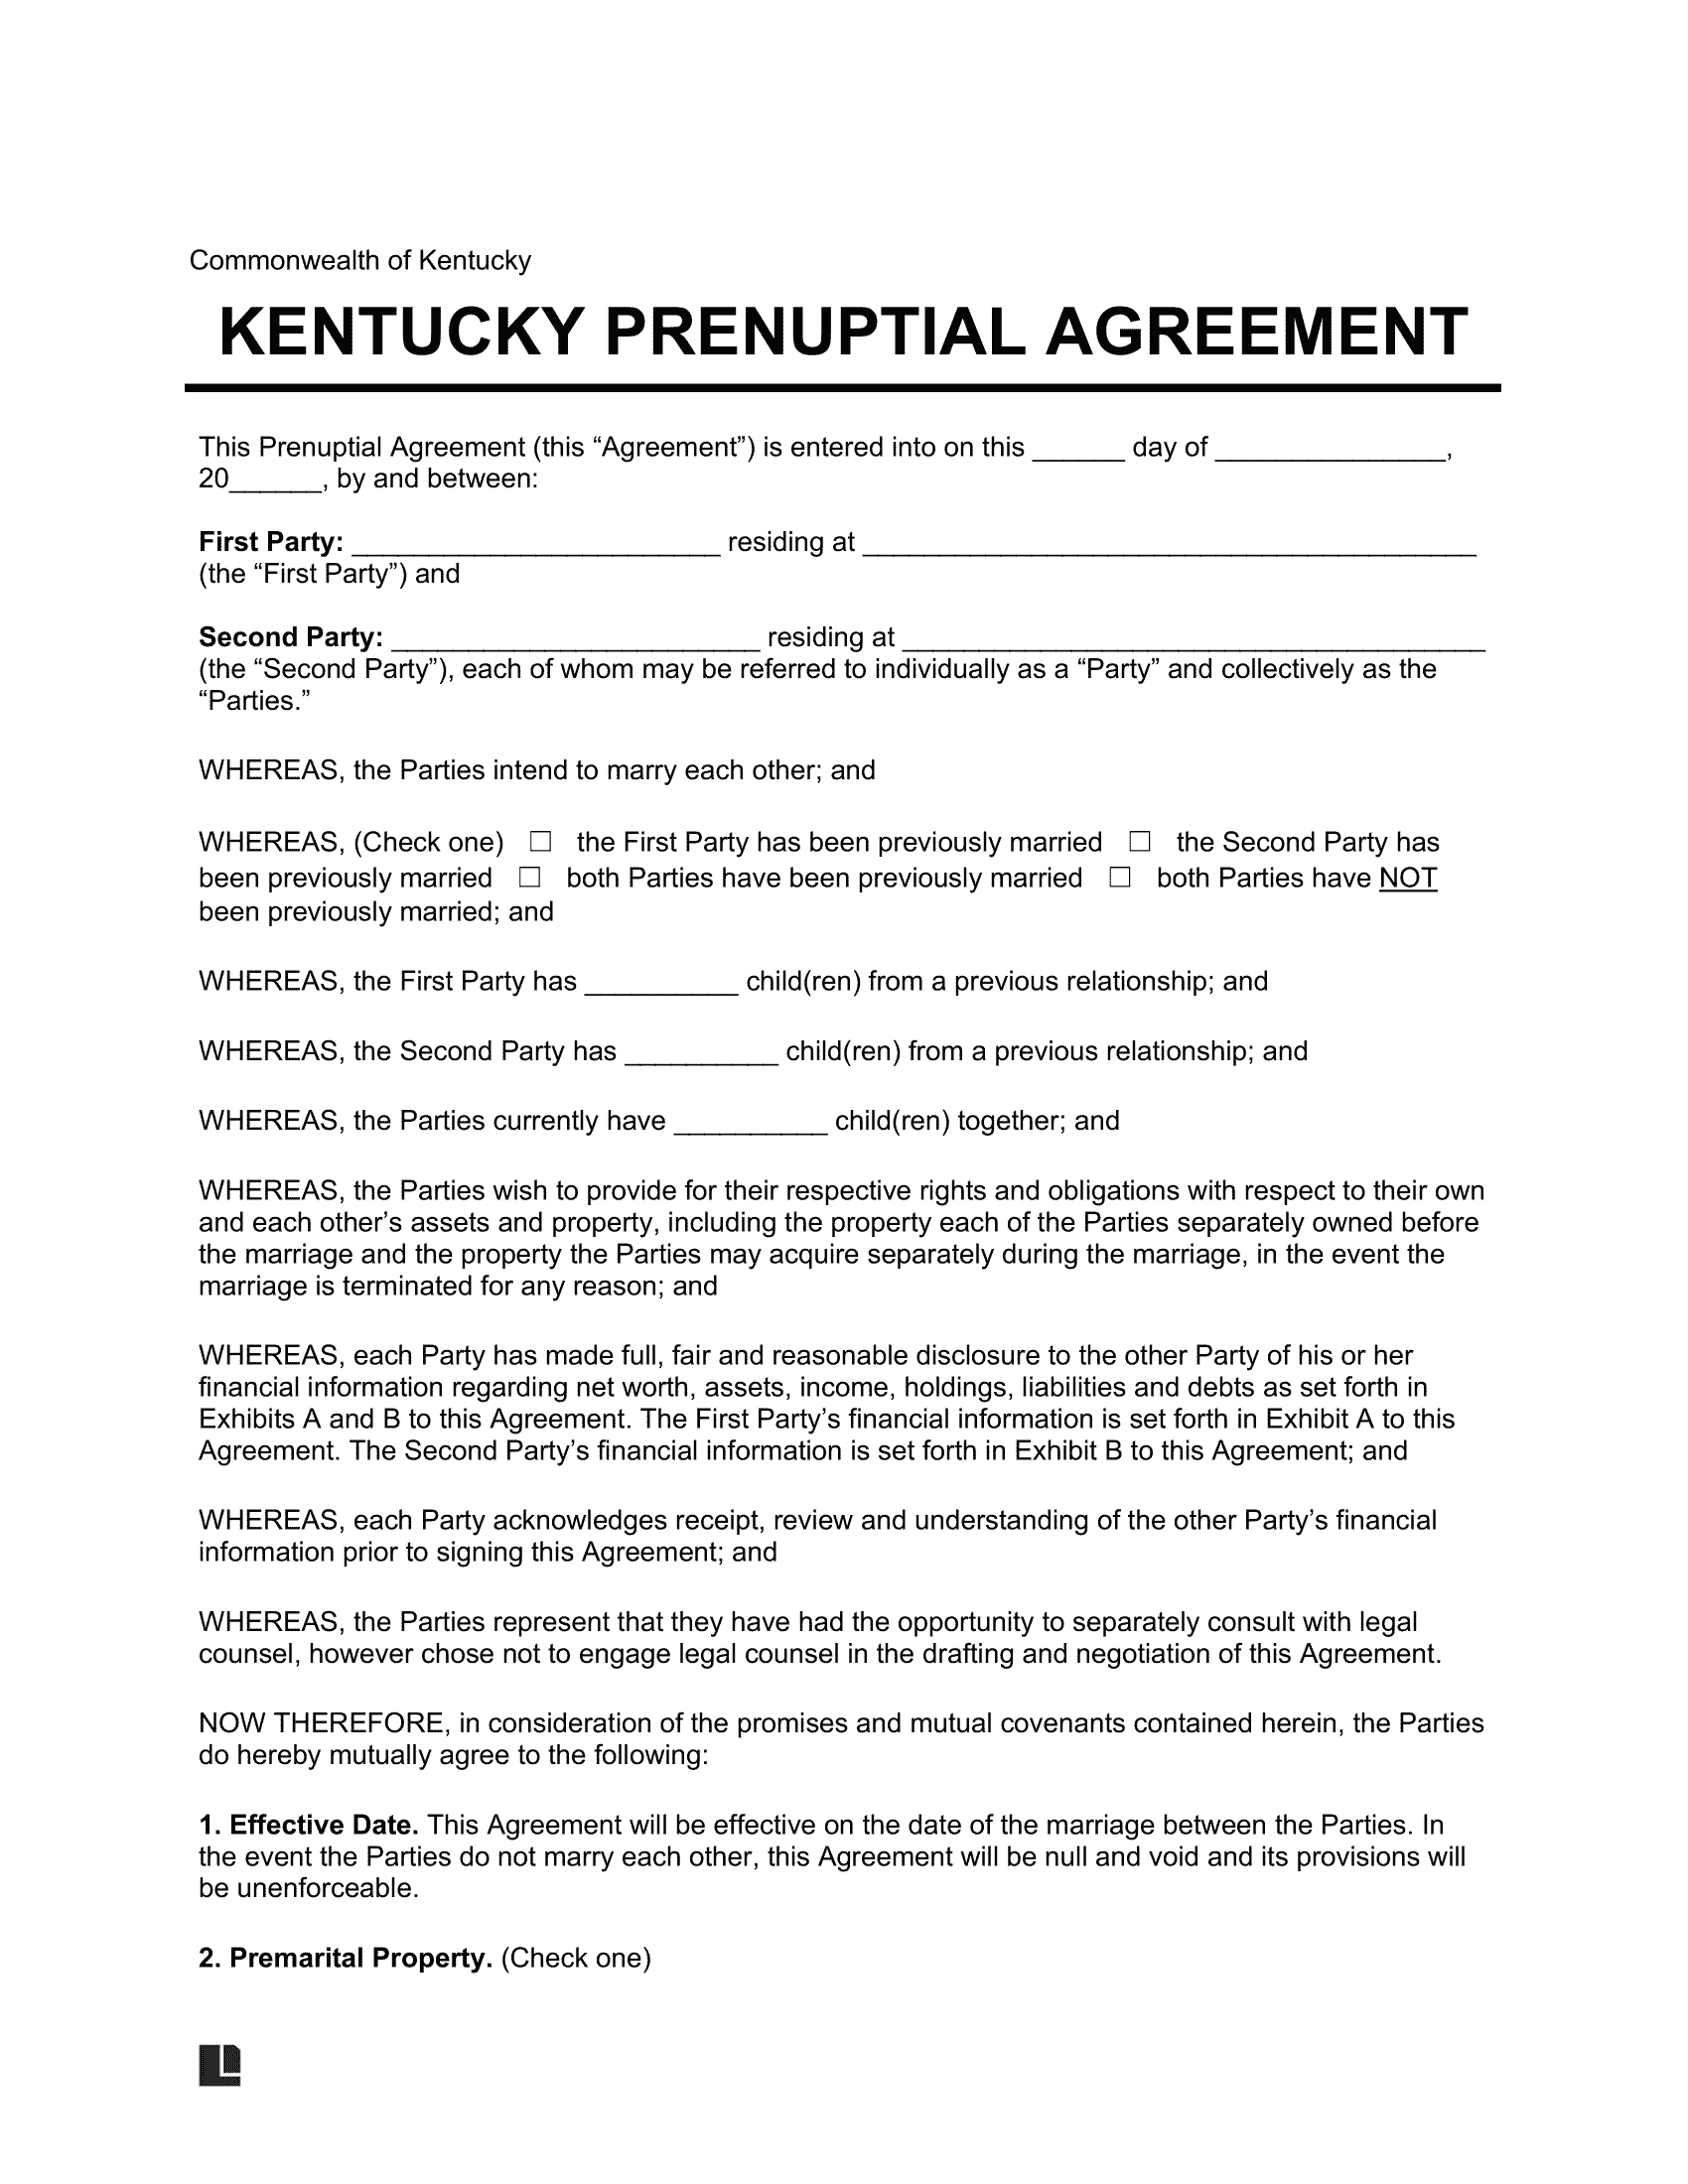 Kentucky Prenuptial Agreement Template